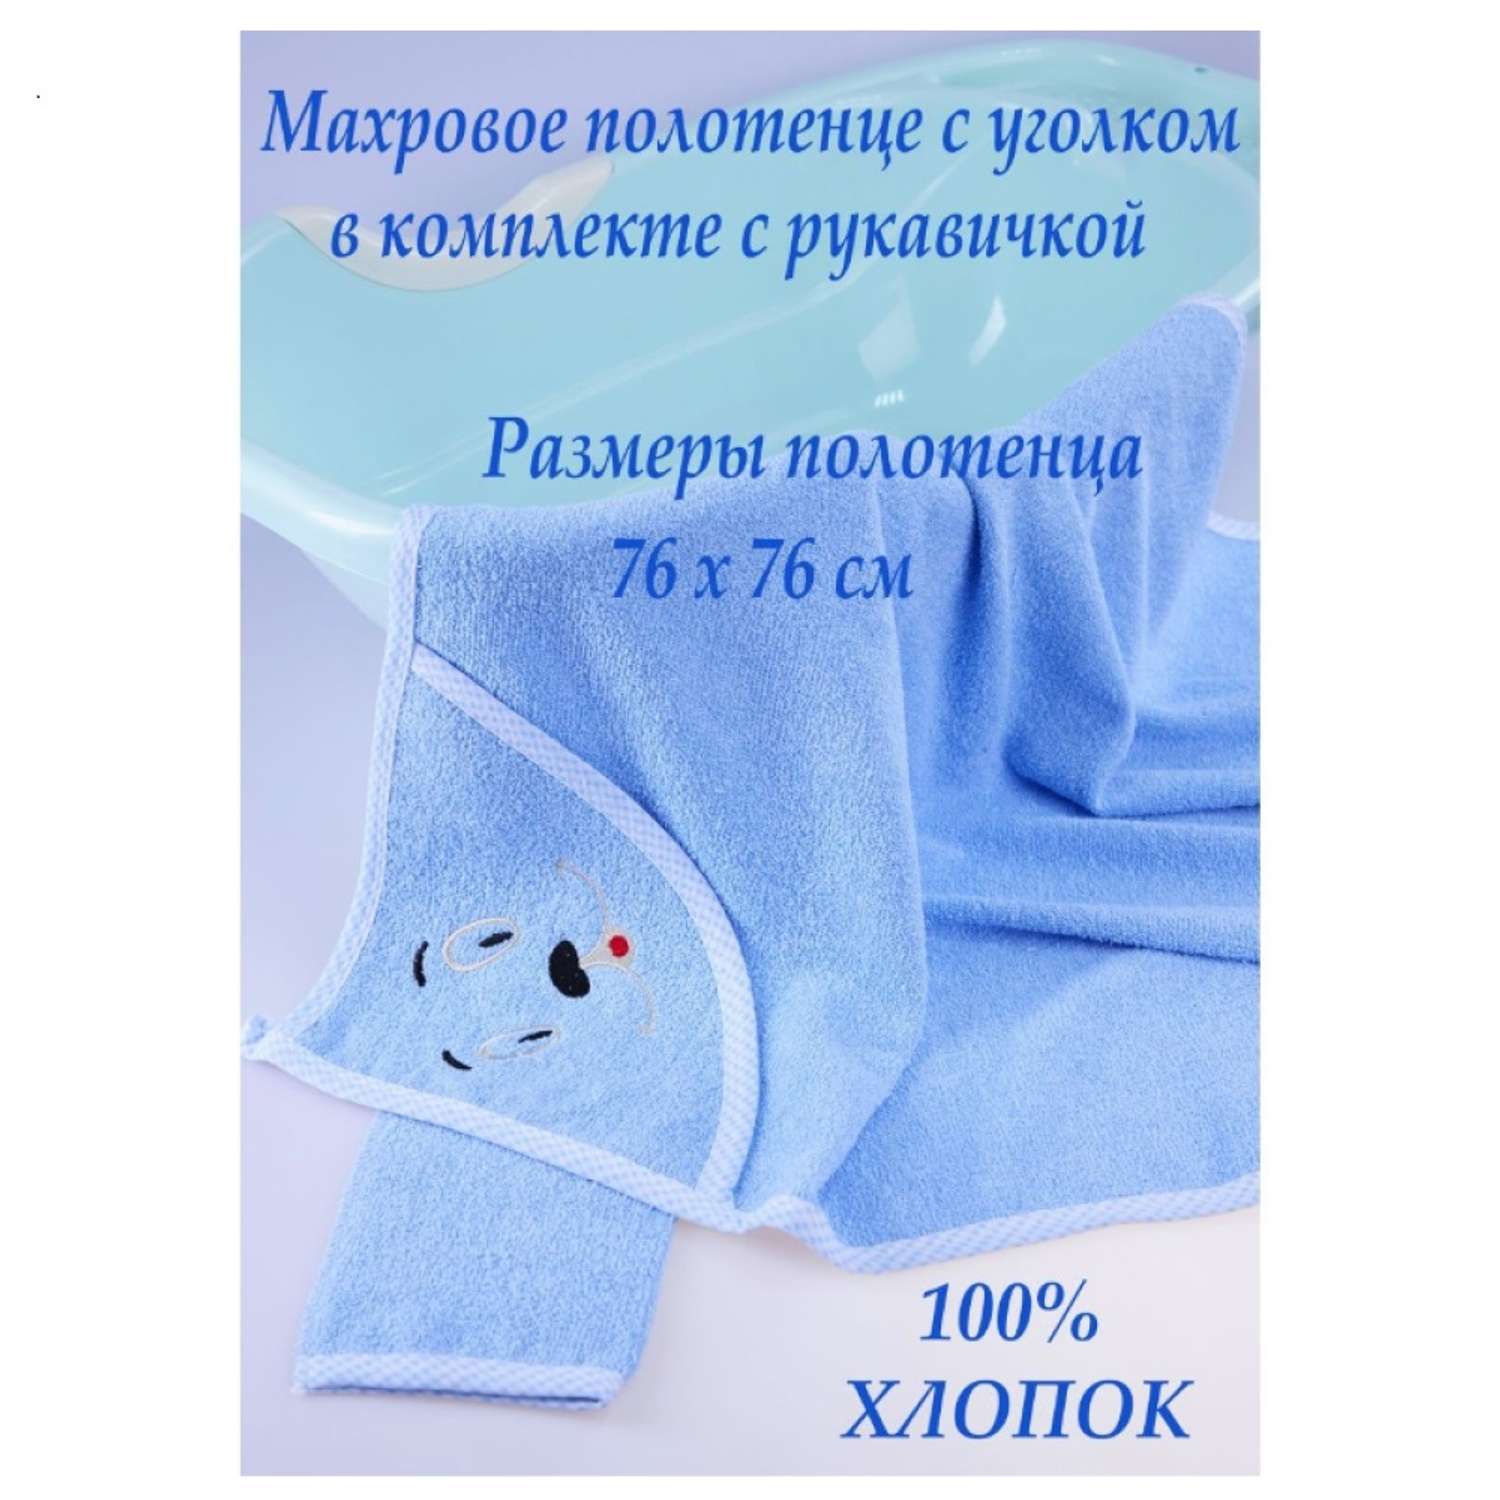 Набор для купания малыша M-BABY махровое полотенце с уголком и рукавичка 100% хлопок голубой - фото 2